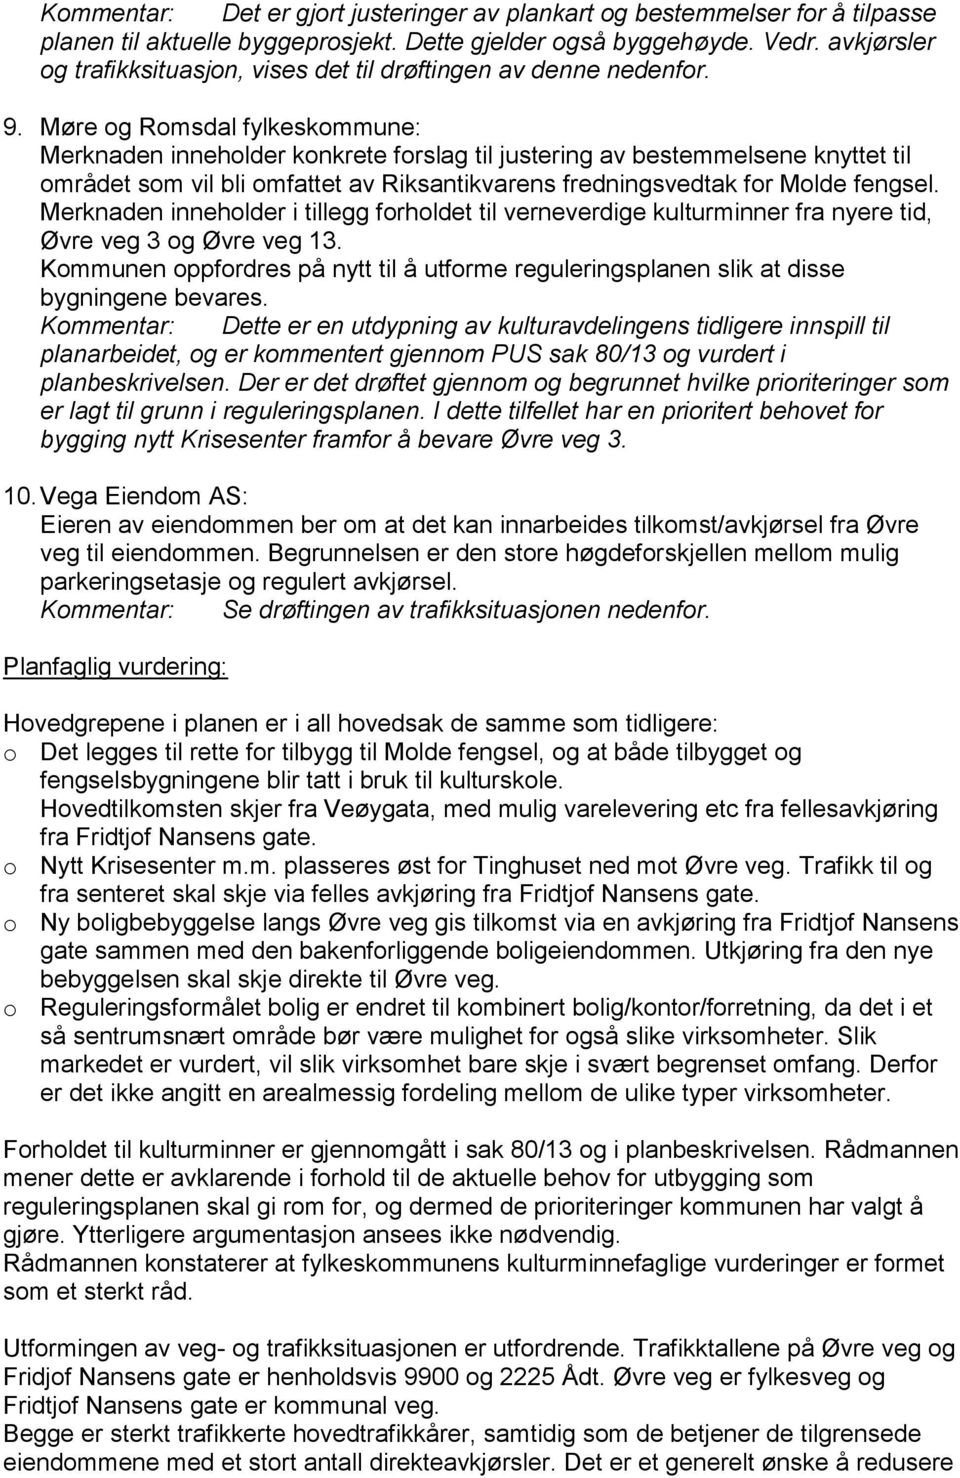 Møre og Romsdal fylkeskommune: Merknaden inneholder konkrete forslag til justering av bestemmelsene knyttet til området som vil bli omfattet av Riksantikvarens fredningsvedtak for Molde fengsel.